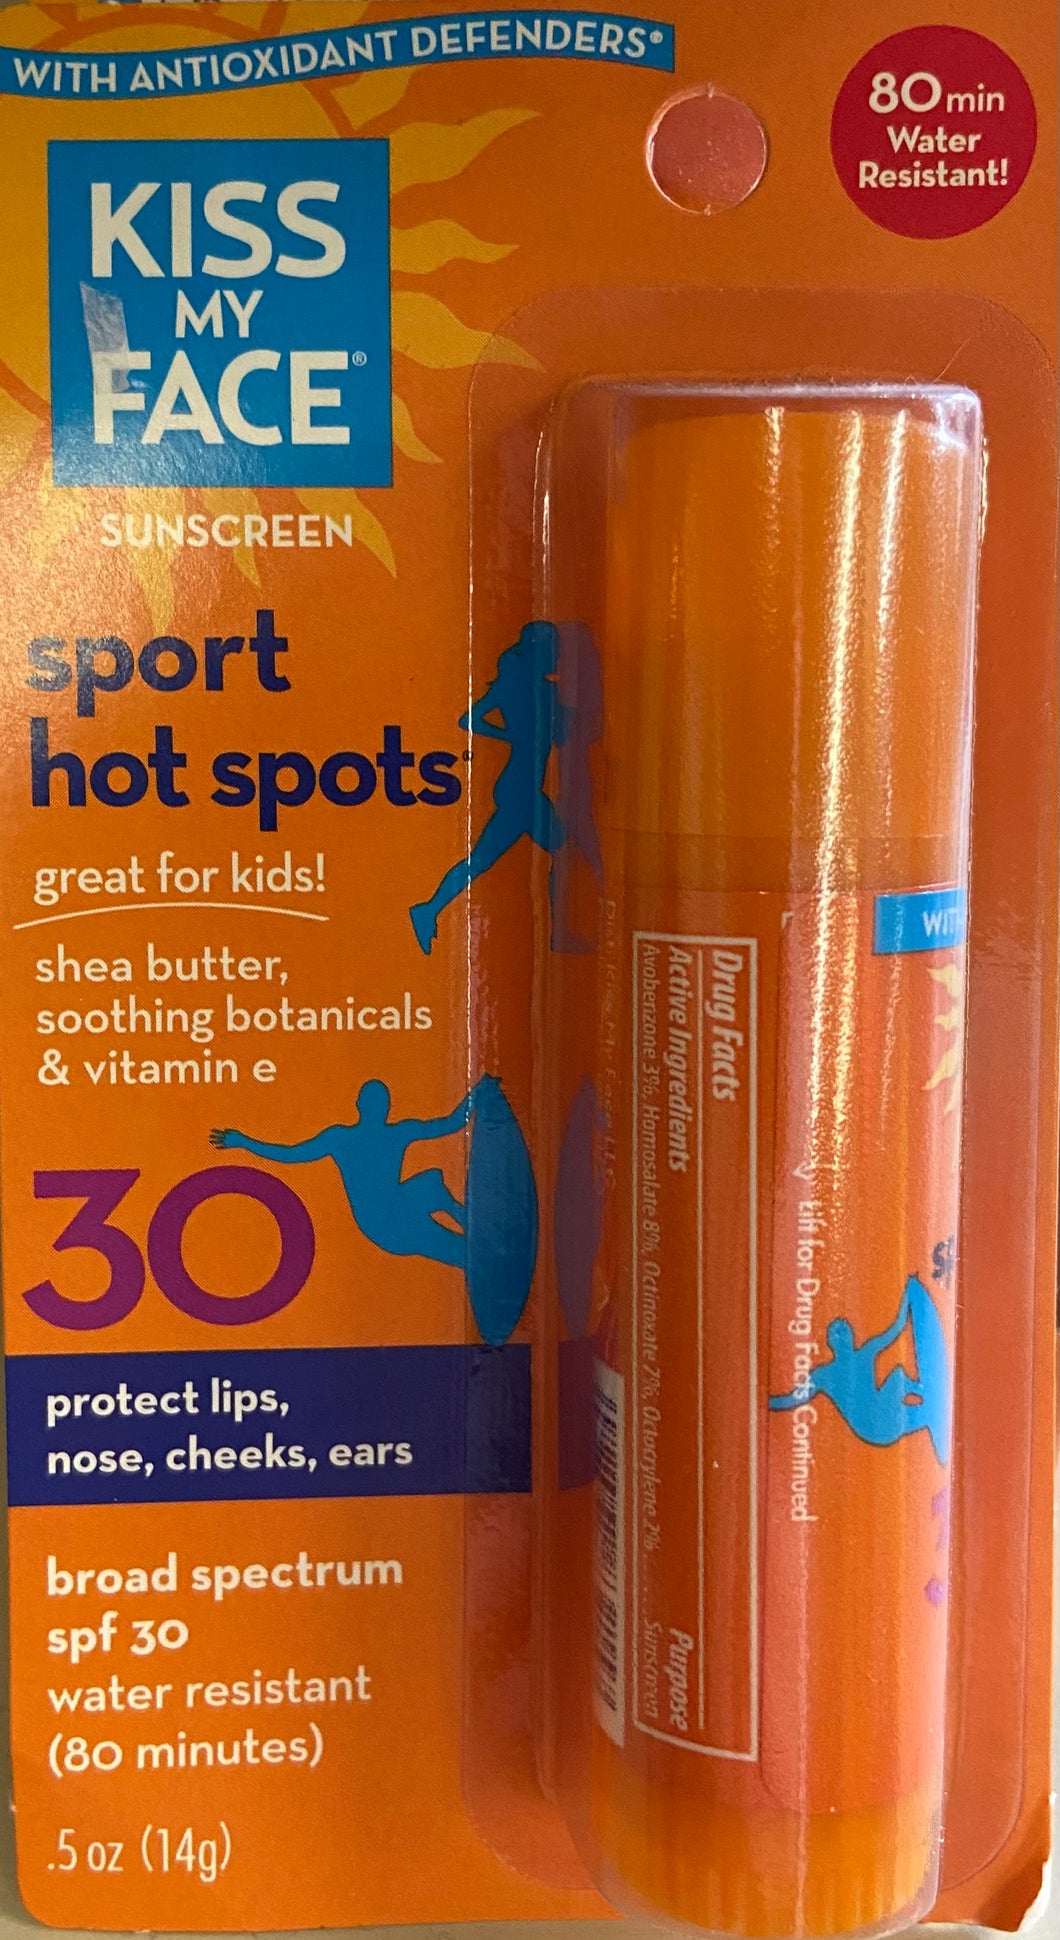 Sunscreen, SPF 30 Stick for Sport Hot Spots, Kiss My Face